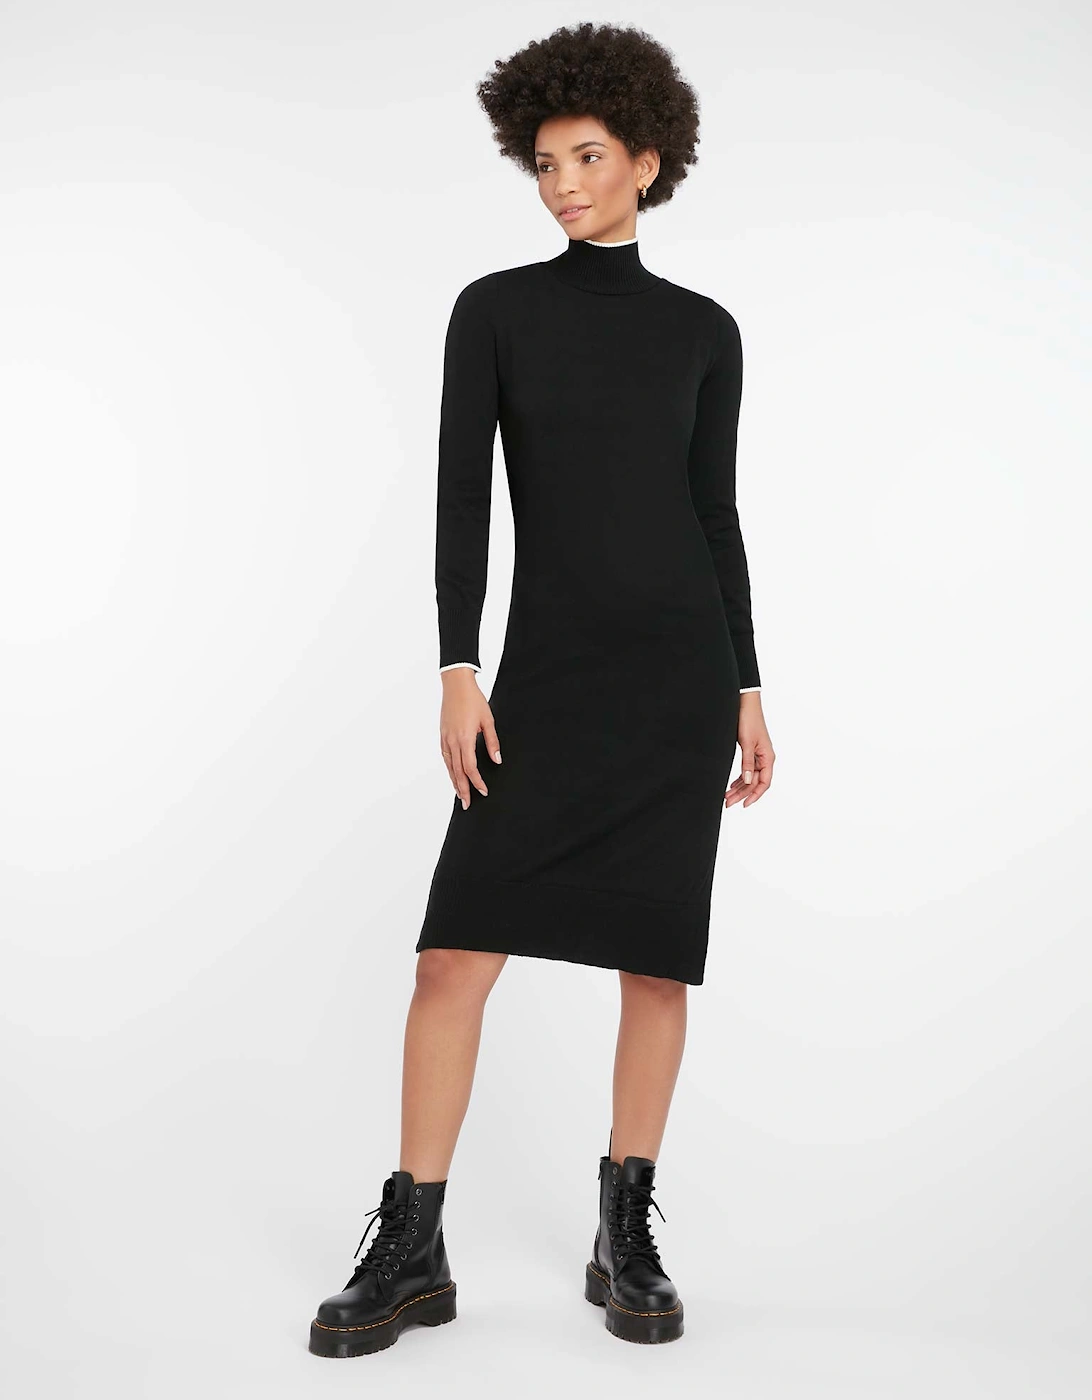 Rothko Sweater Dress in Black, 6 of 5